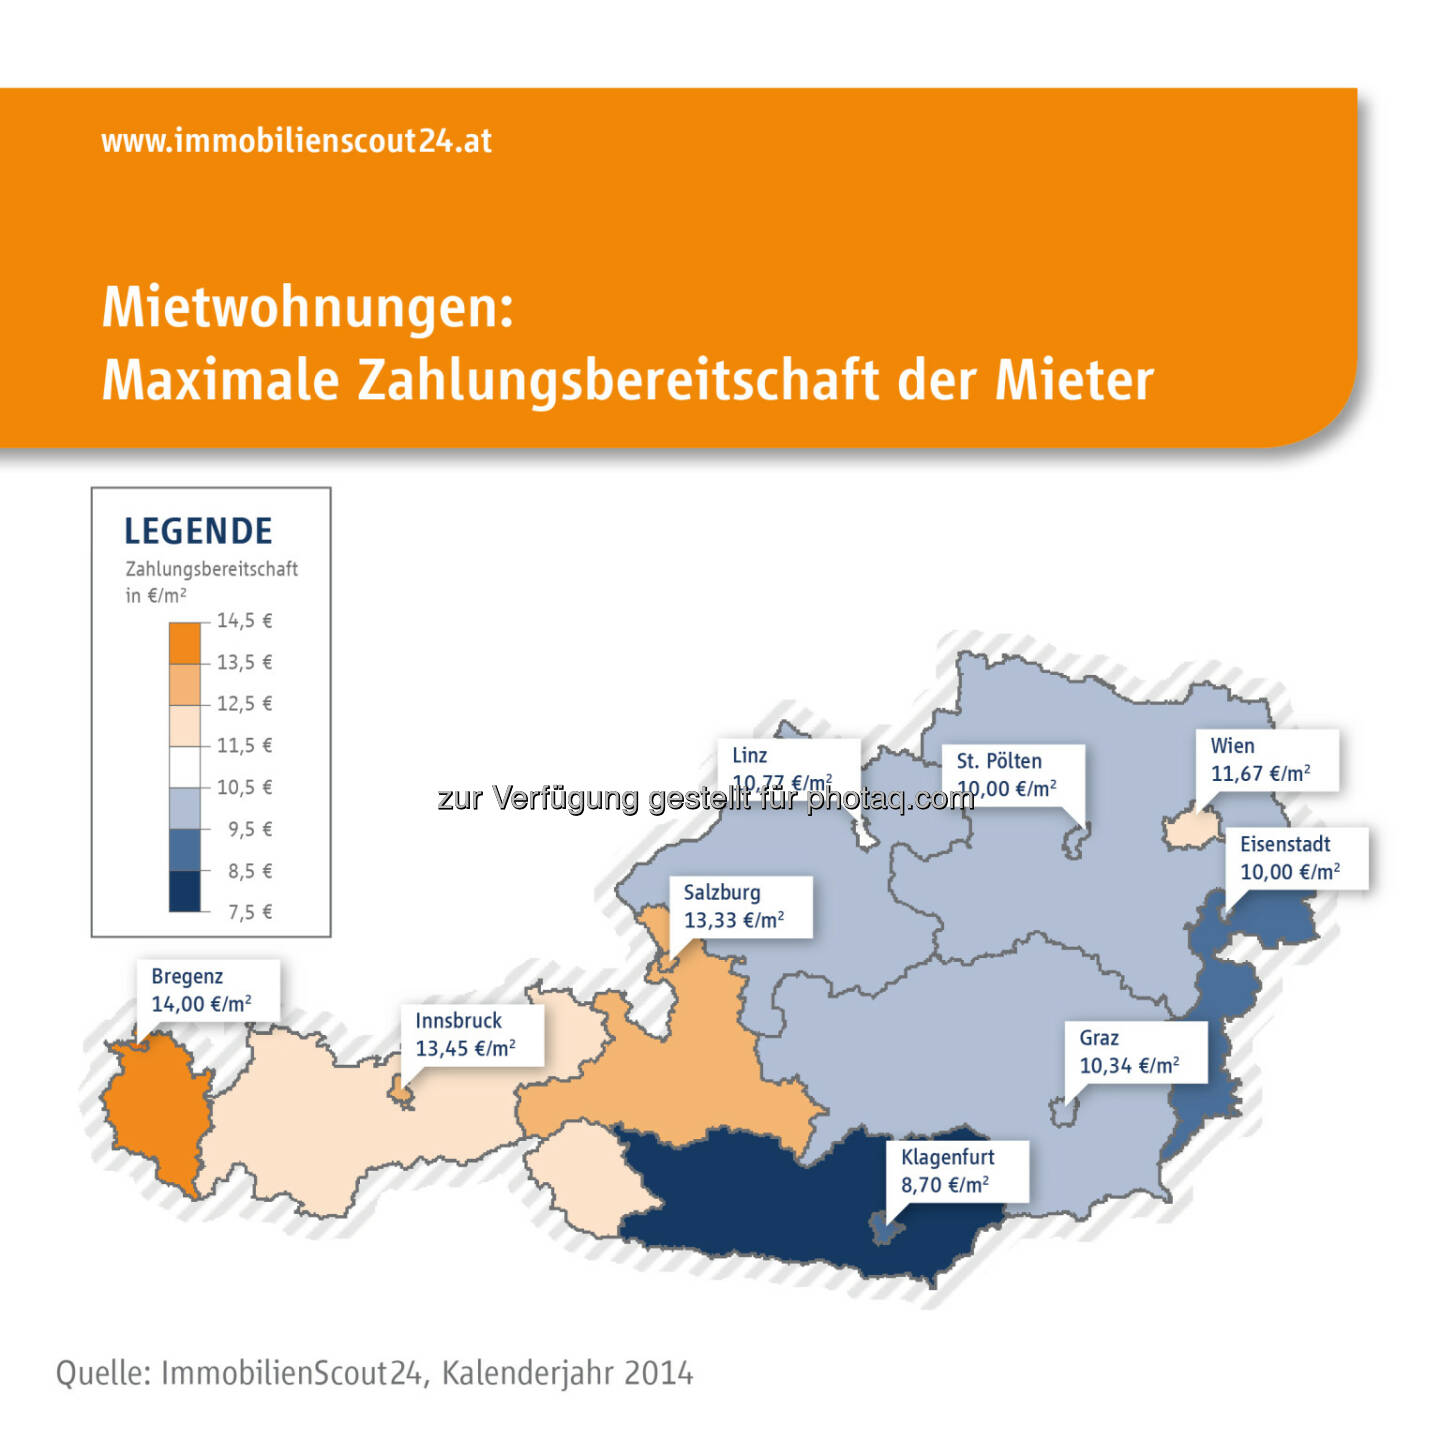 Immobilien Scout GmbH - Niederlassung Wien: ImmobilienScout24 Nachfrageanalyse: Österreichs Mieter bereit, 11,7 Euro pro Quadratmeter für ihre Wunschwohnung zu zahlen